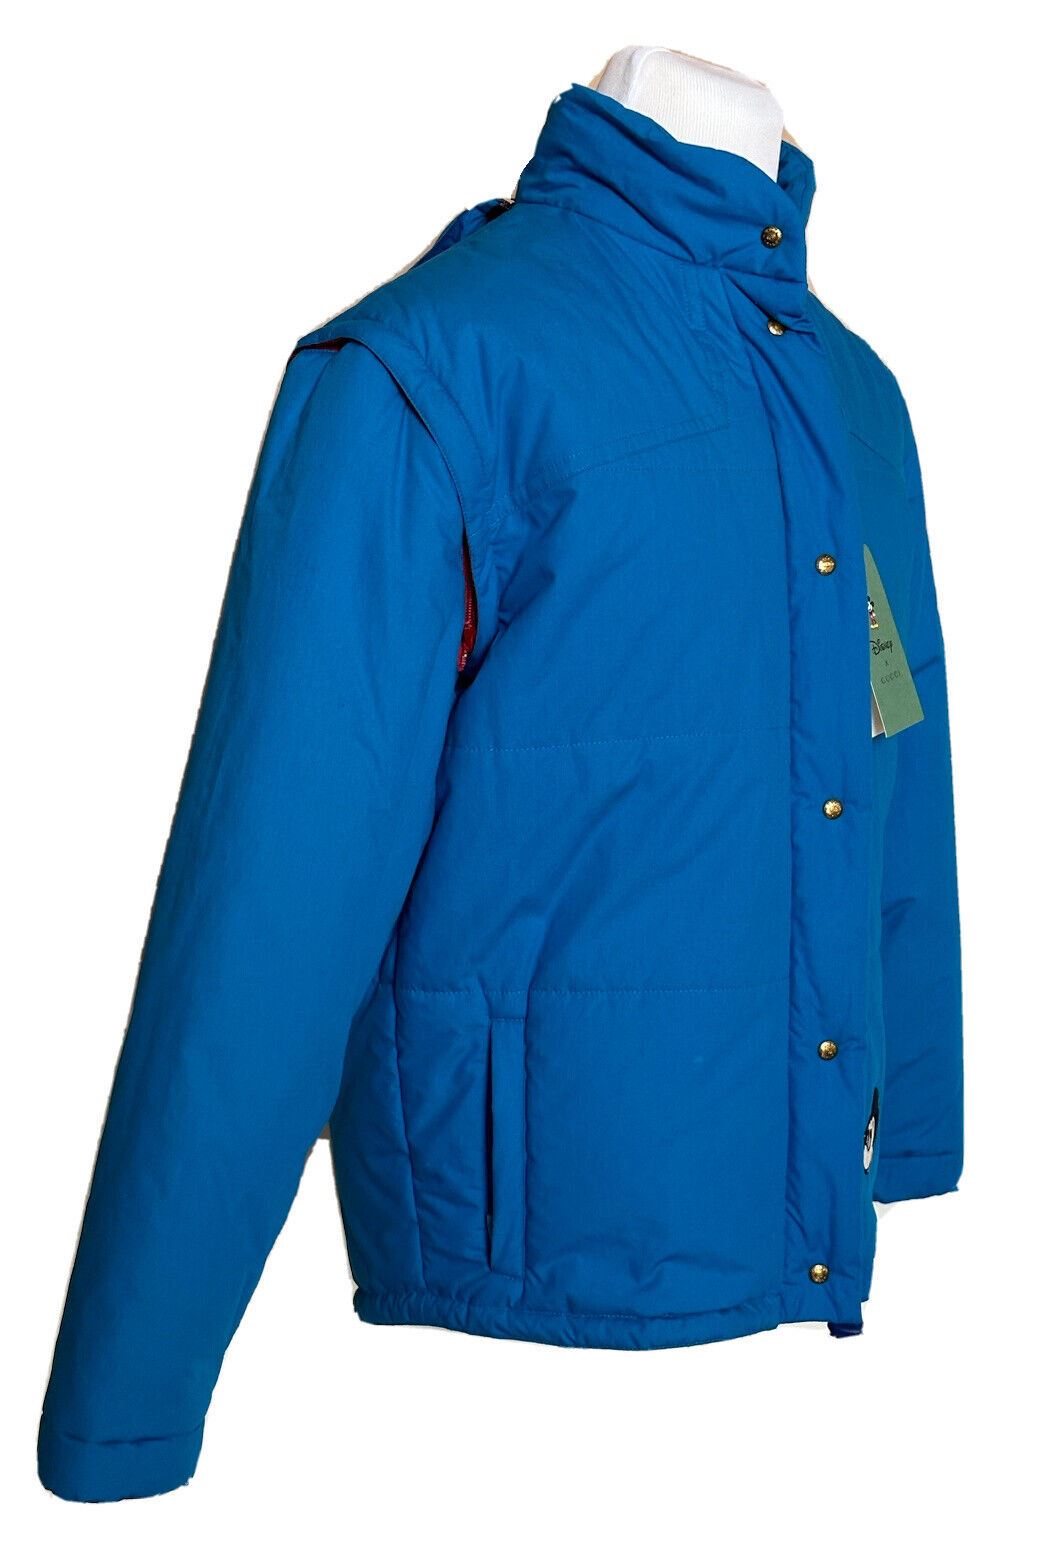 Мужская синяя куртка с капюшоном NWT Gucci с Микки Маусом Диснея, большая (42 США) 608978